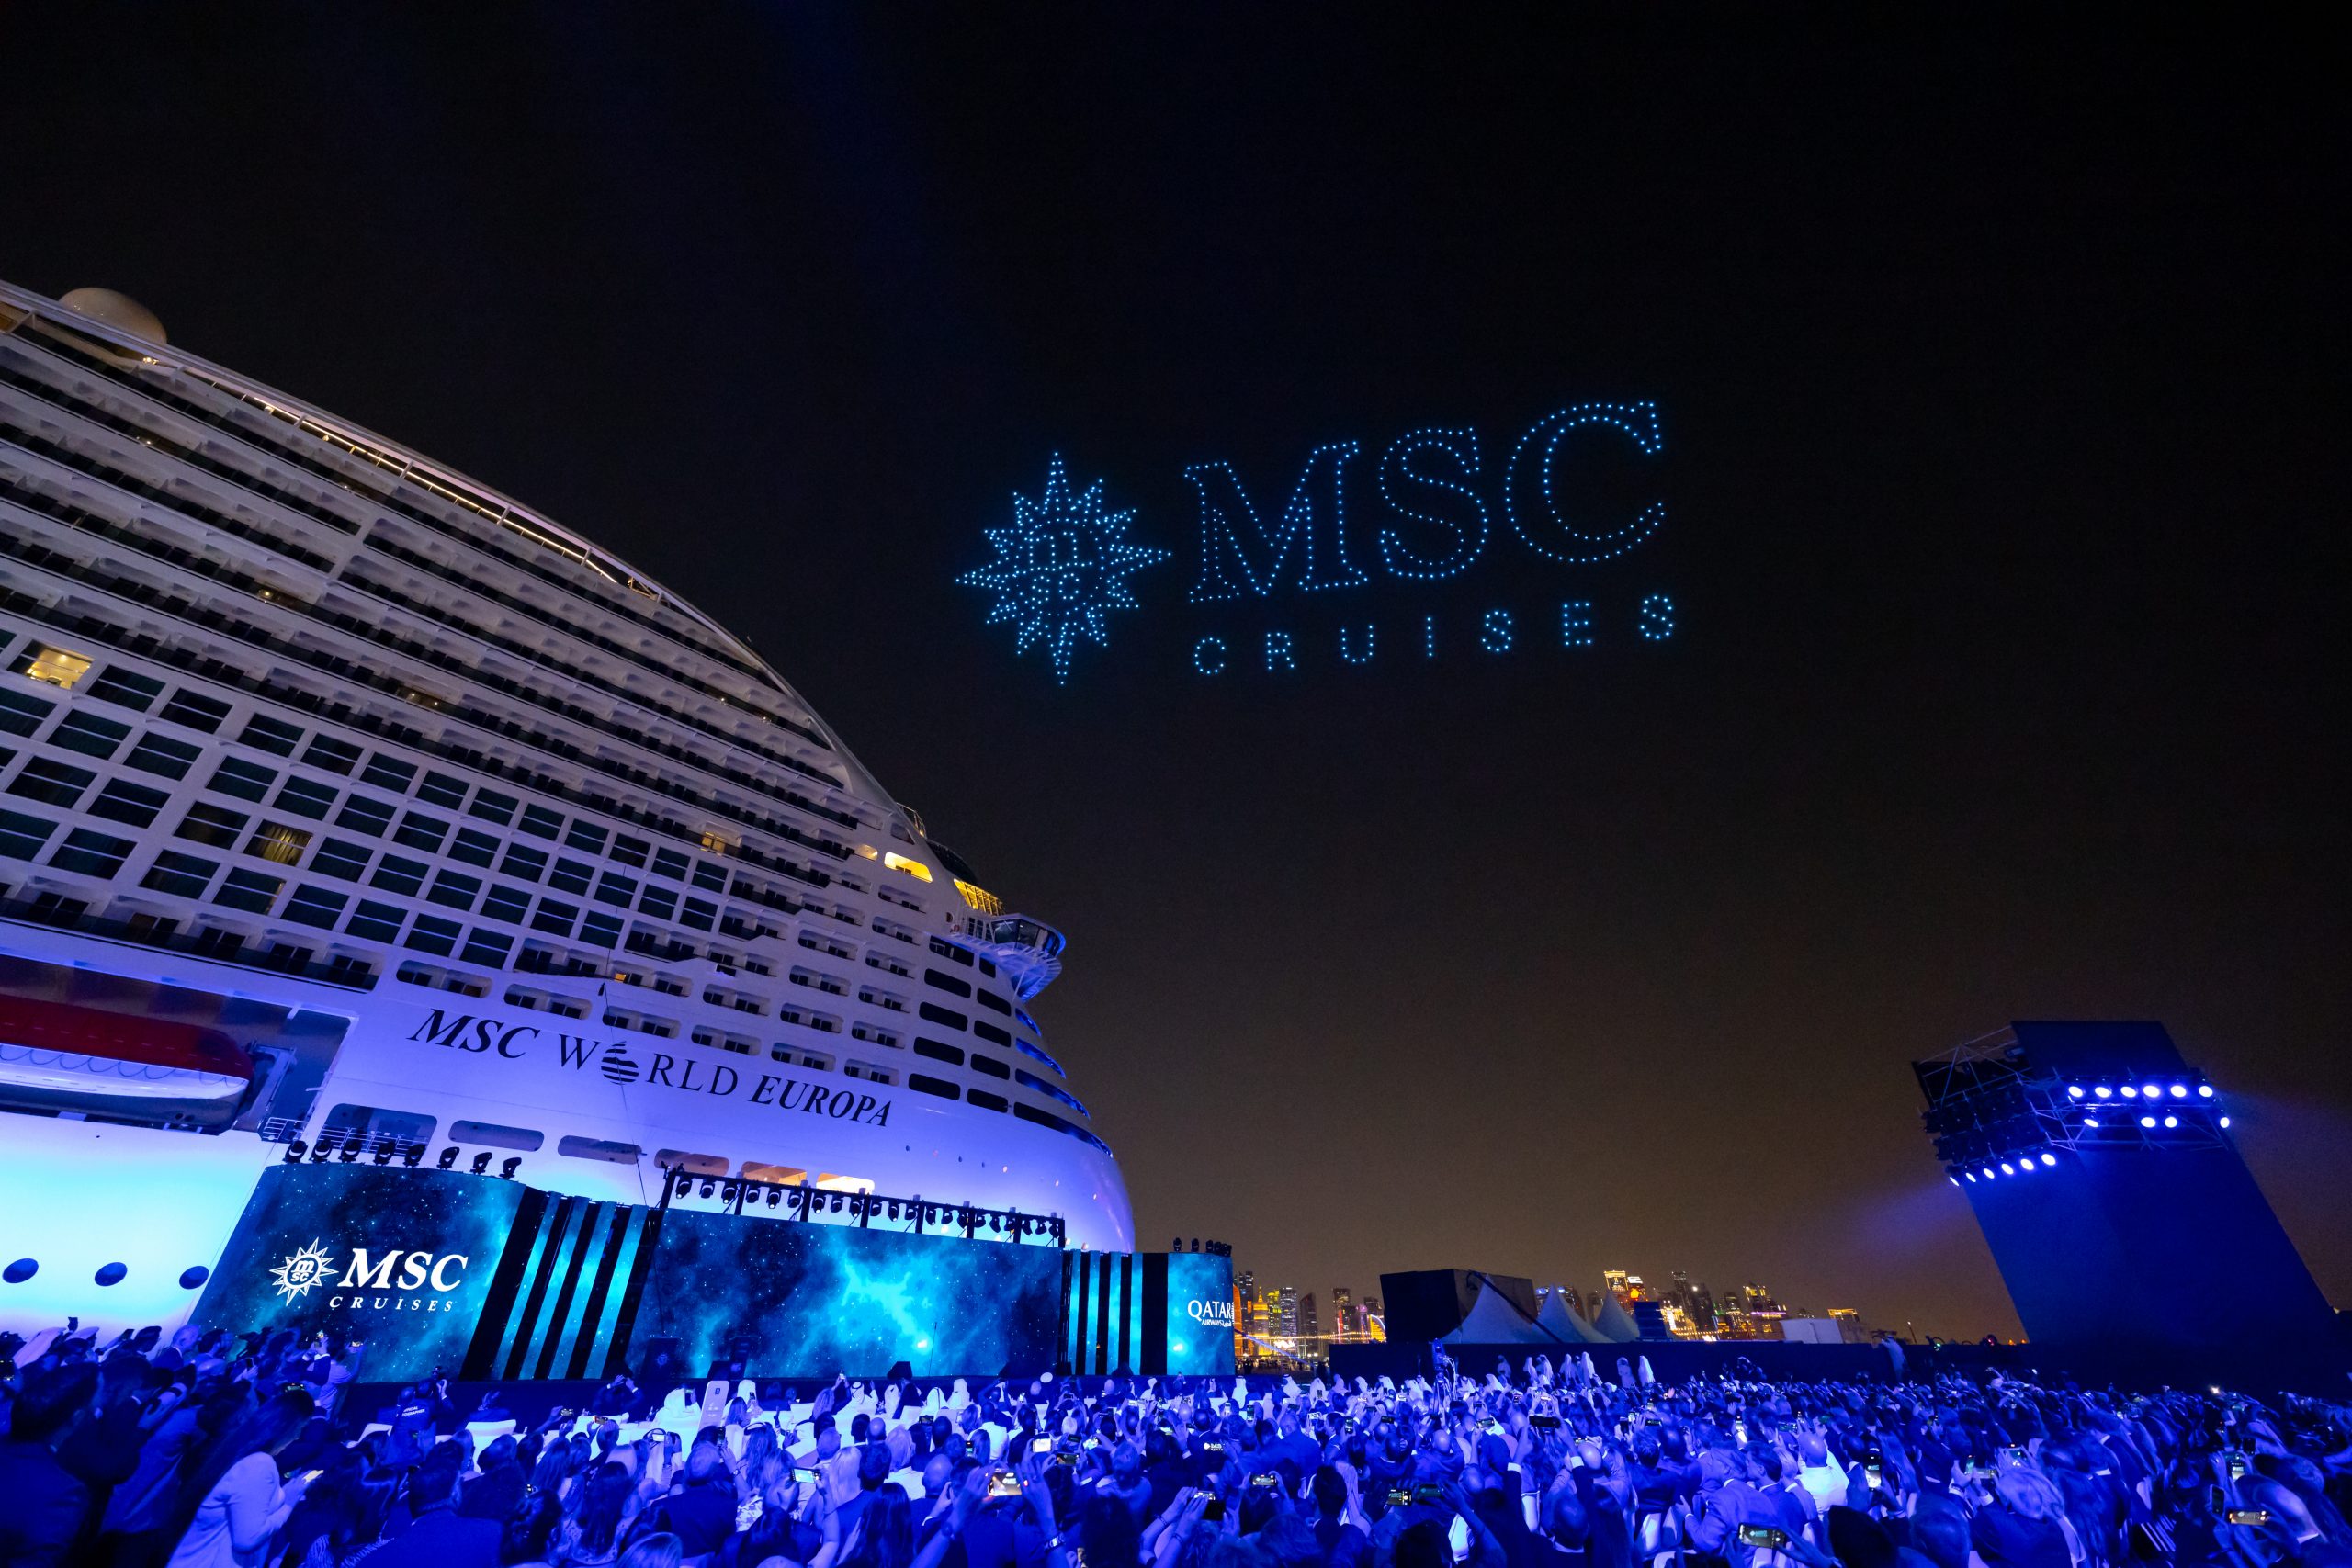 Taufe der MSC World Europa in Doha